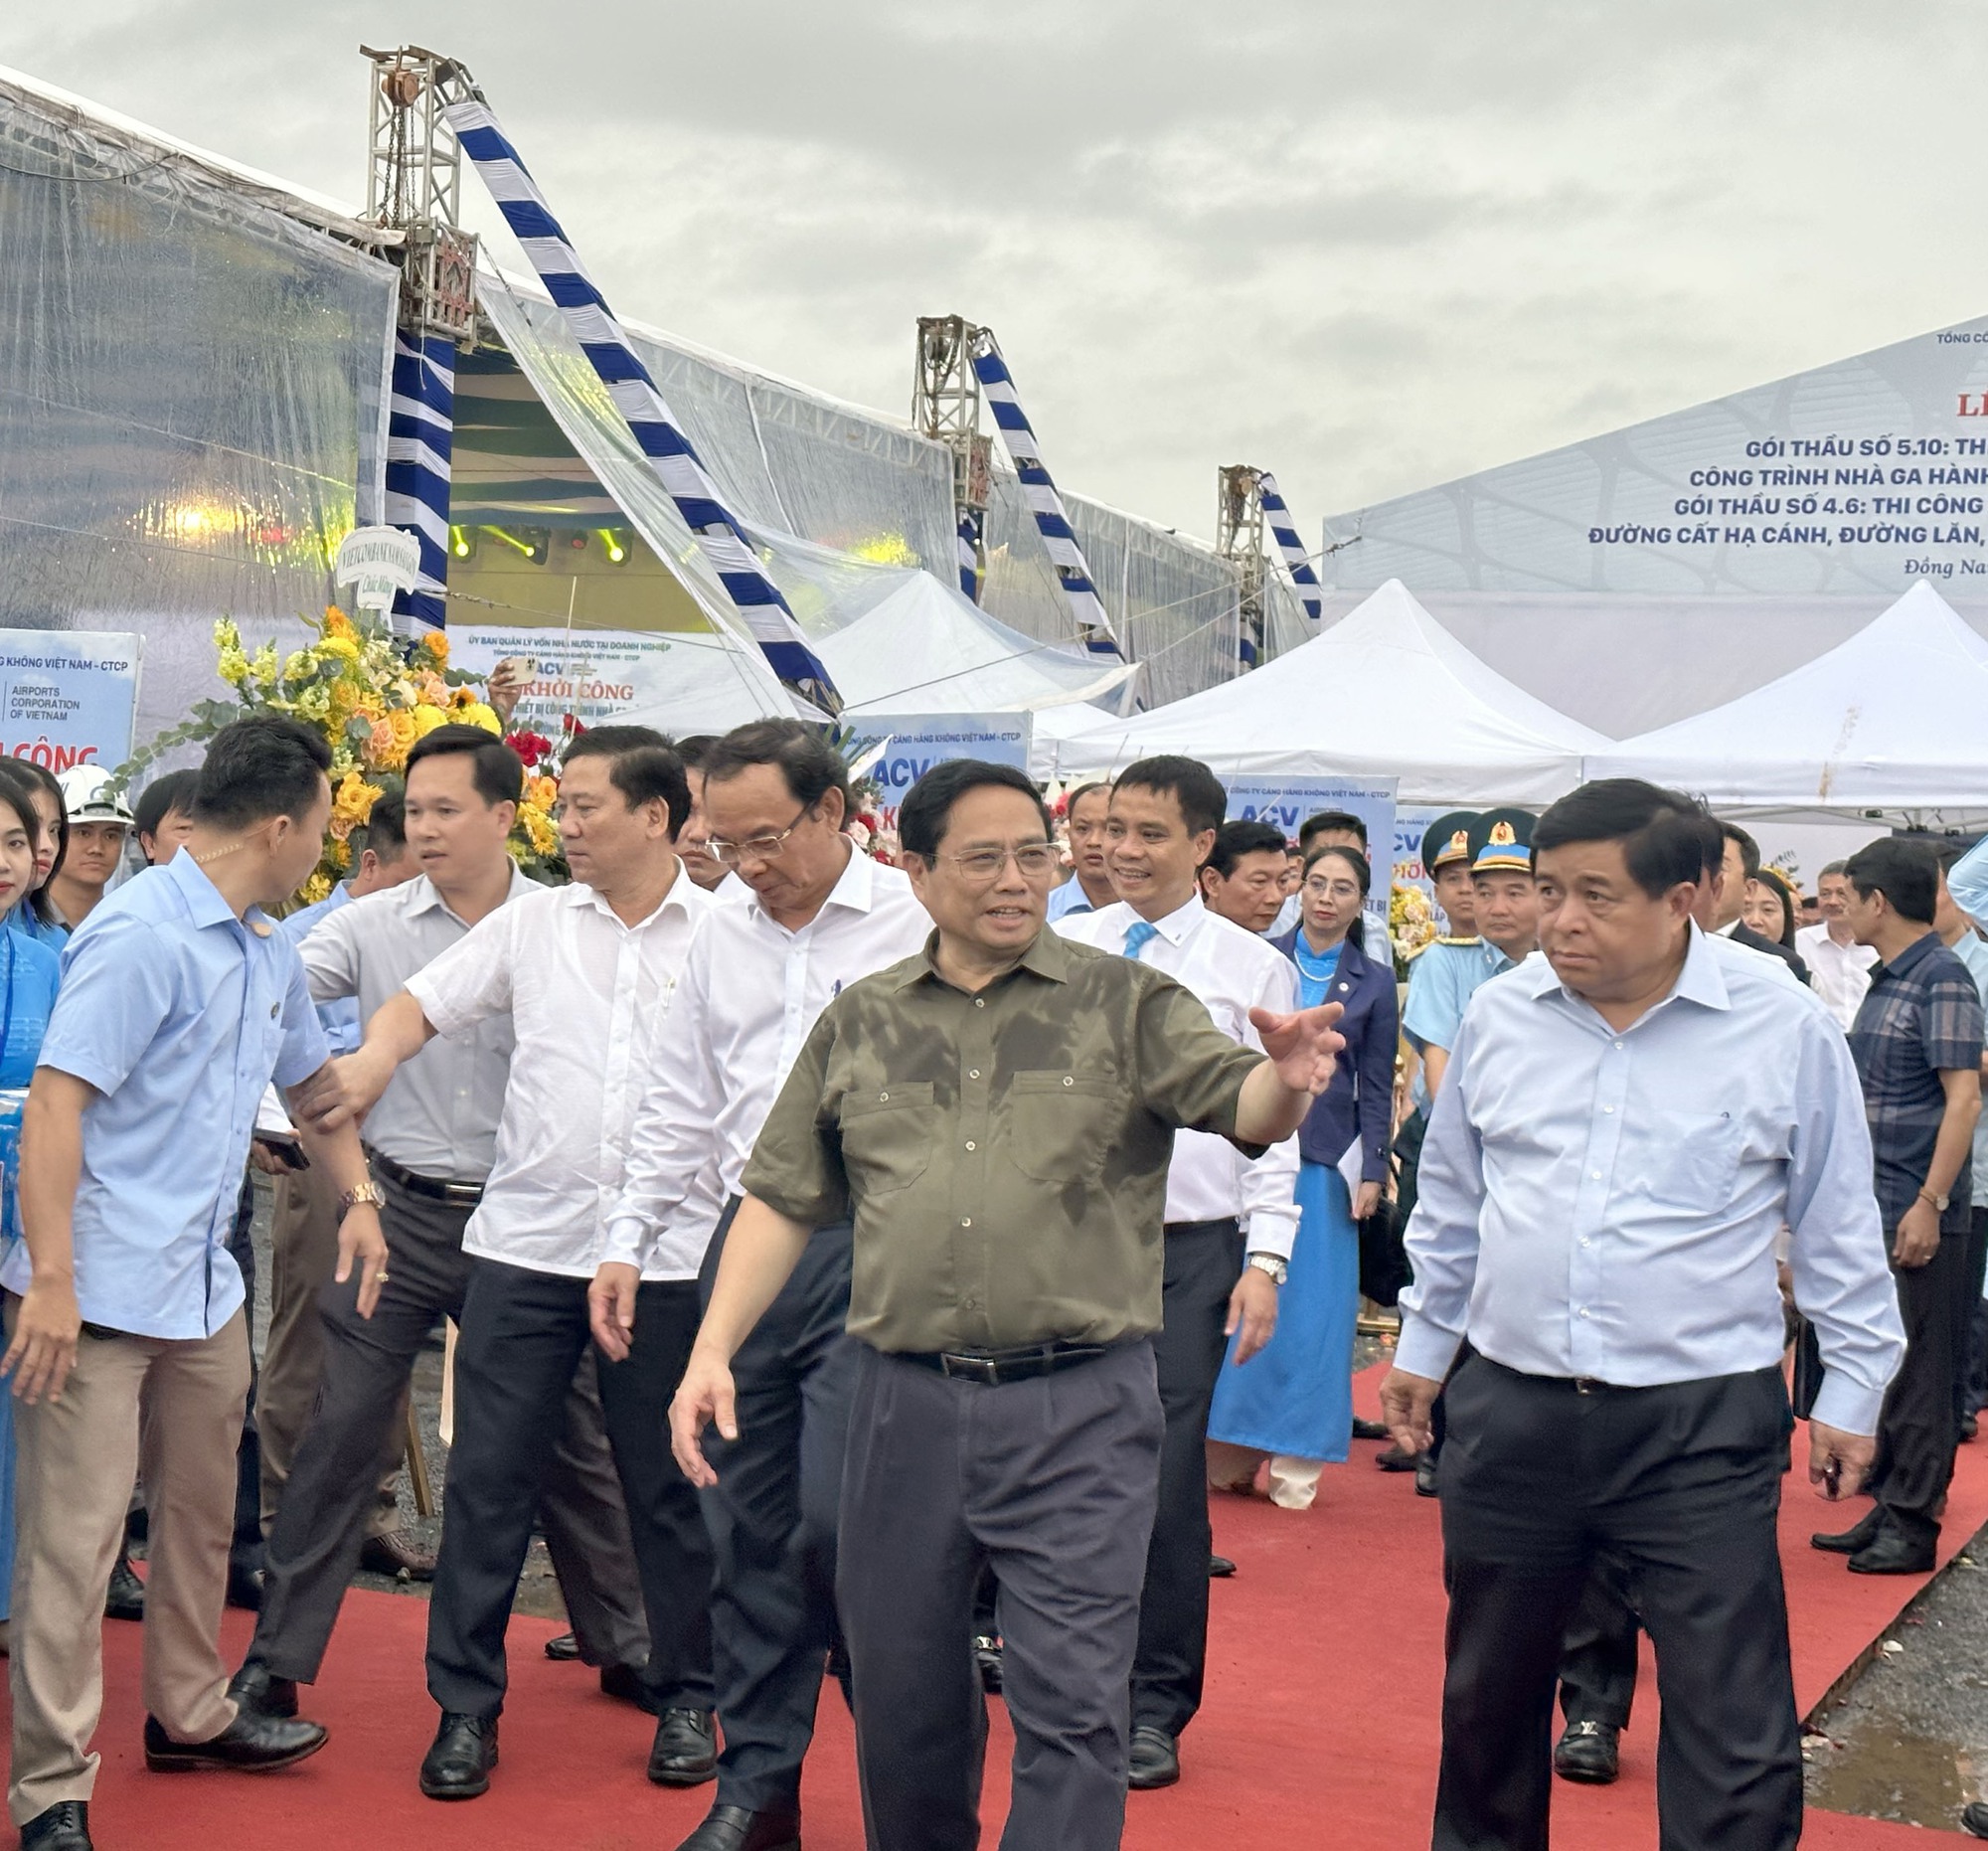 Thủ tướng nhấn nút khởi công nhà ga sân bay Long Thành và Tân Sơn Nhất - Ảnh 2.